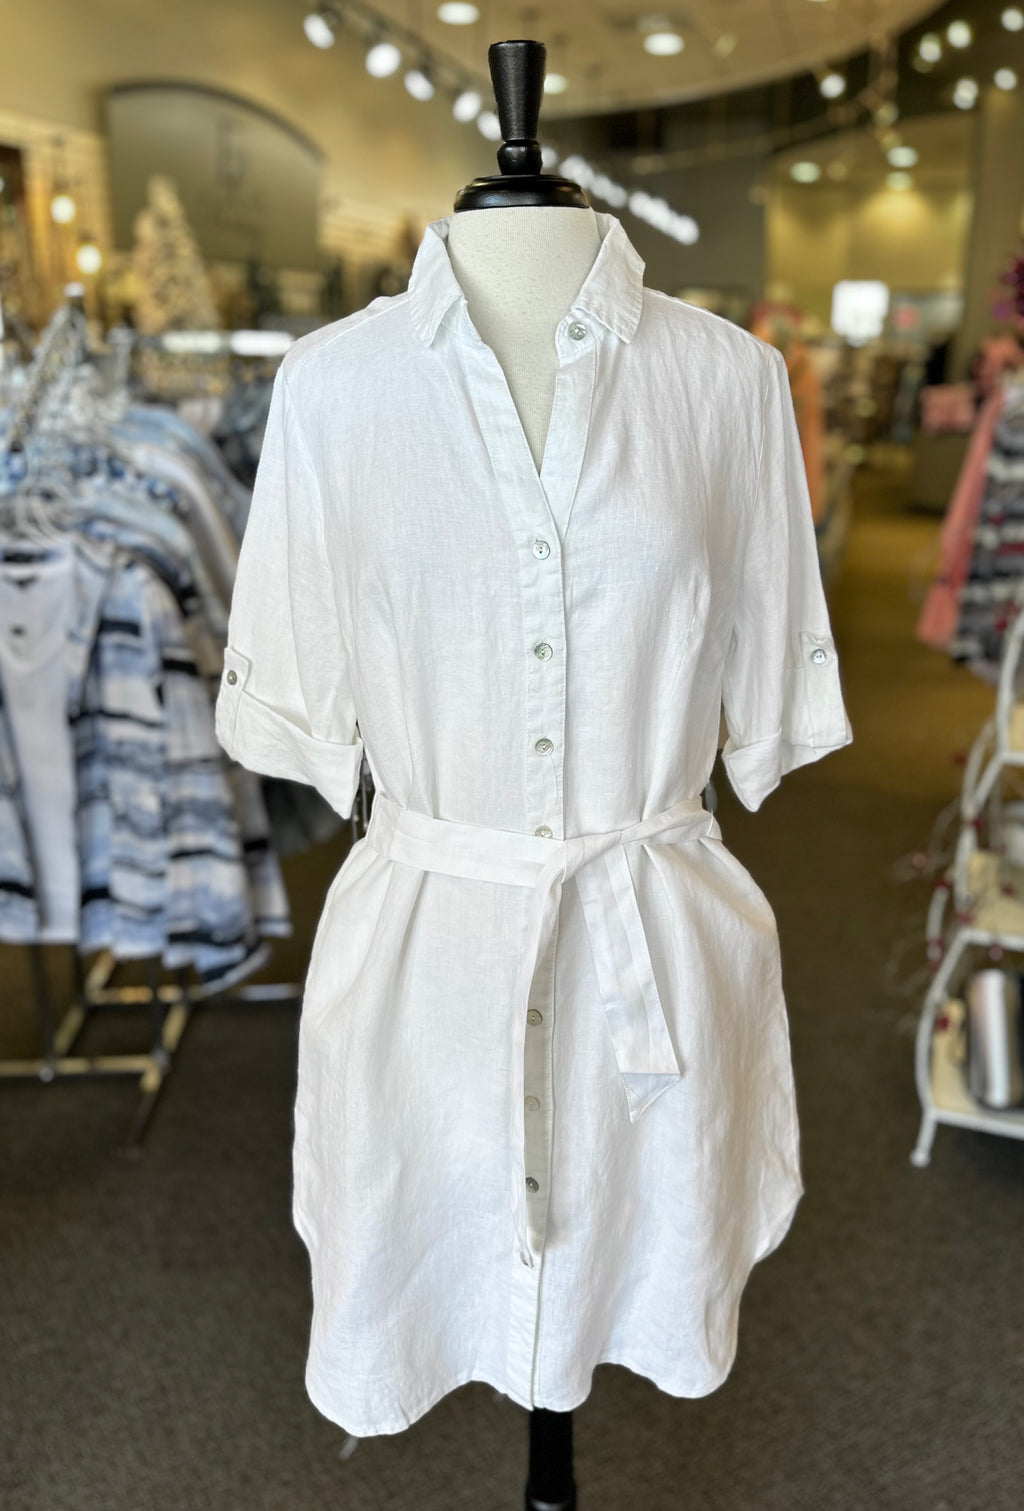 Lulu B Linen Button Down Shirt Dress with Pockets